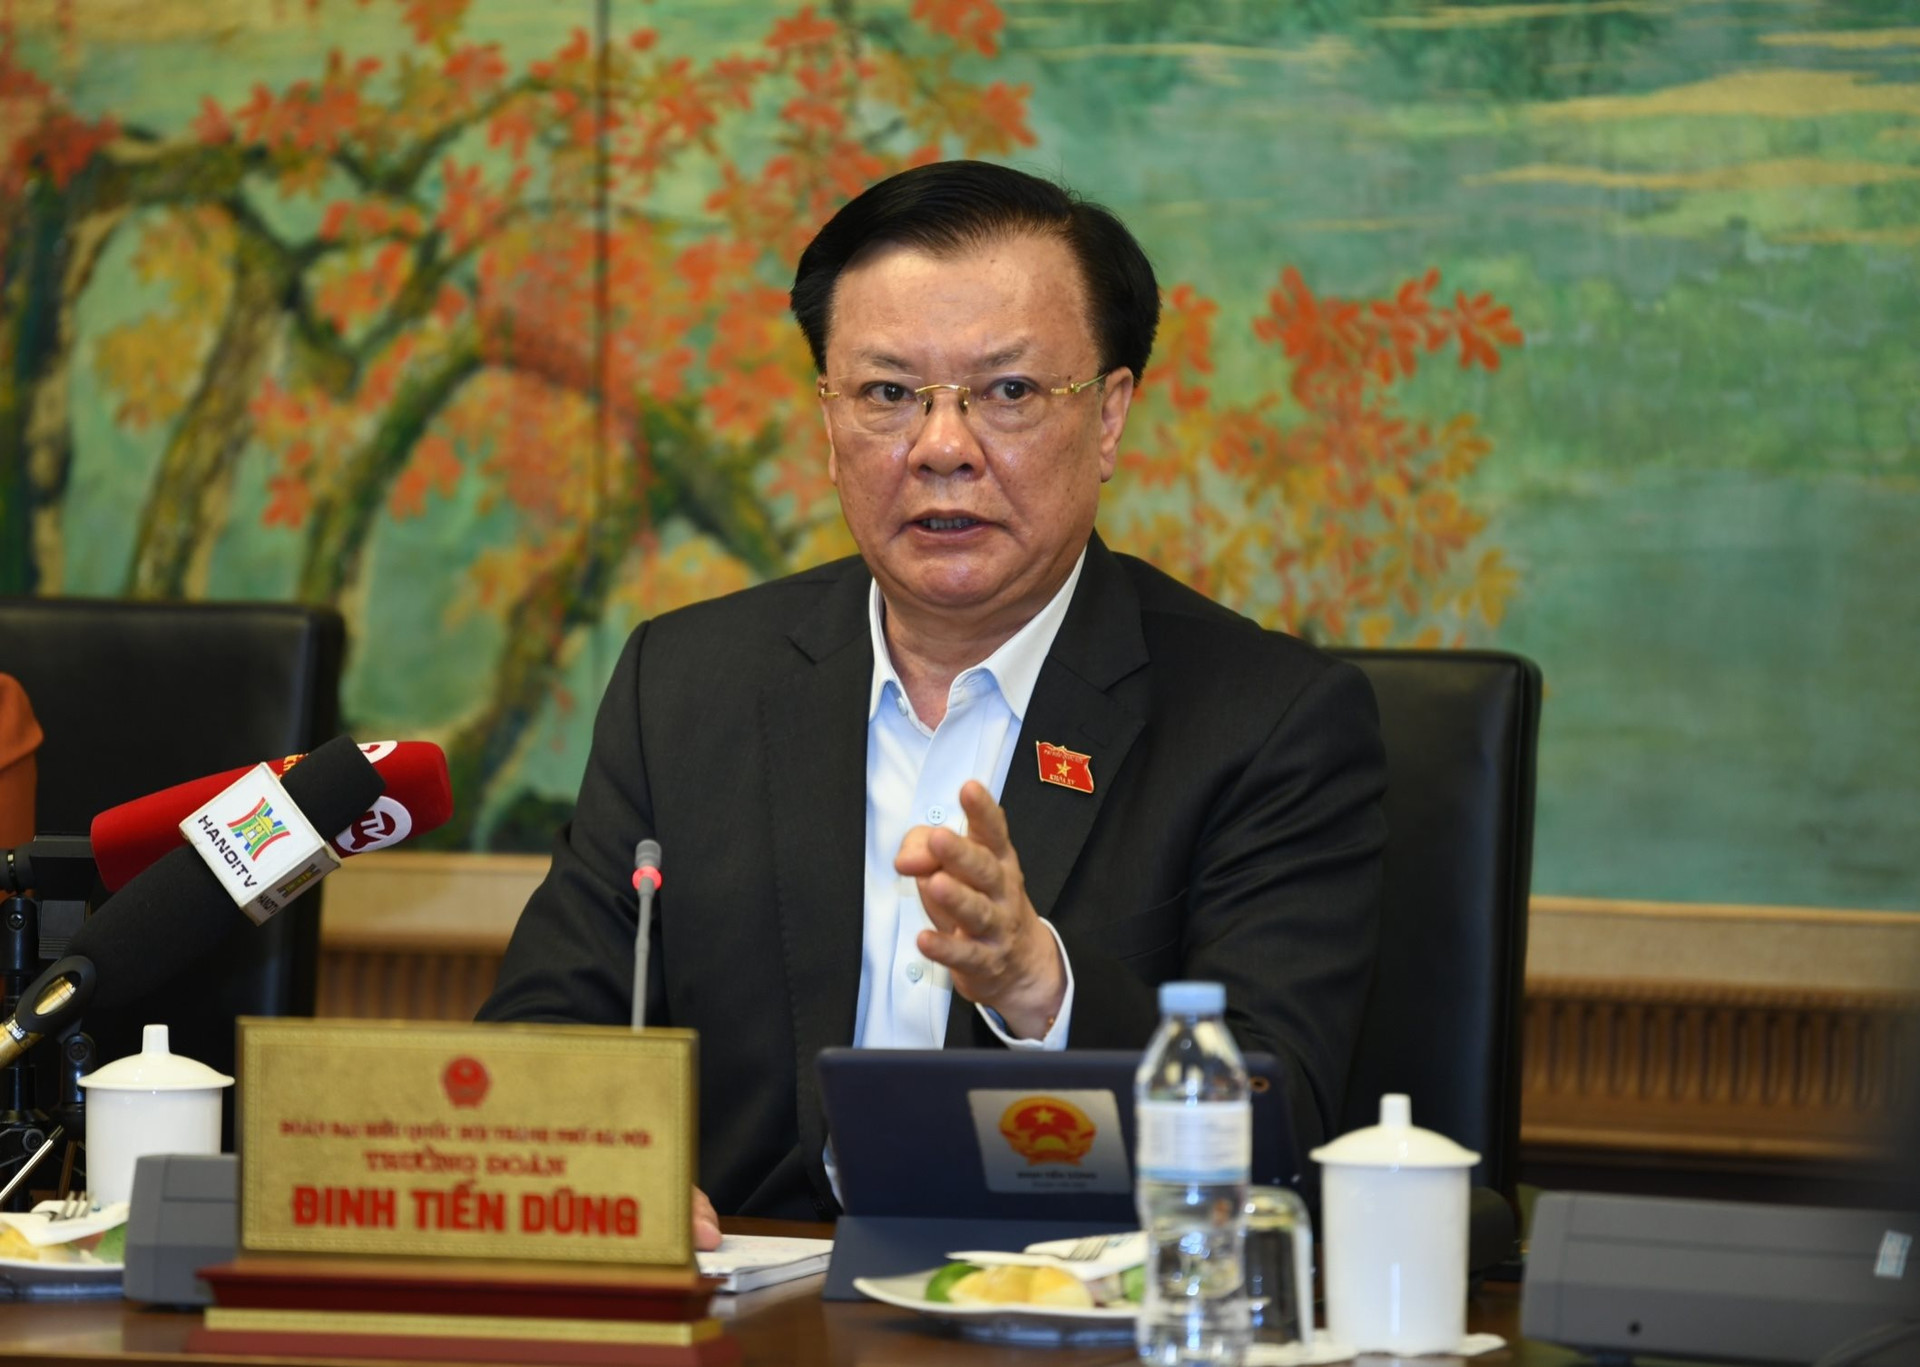 Bí thư Hà Nội: HĐND thành phố có thể quyết định dự án tối đa 20.000 tỷ đồng - Ảnh 1.